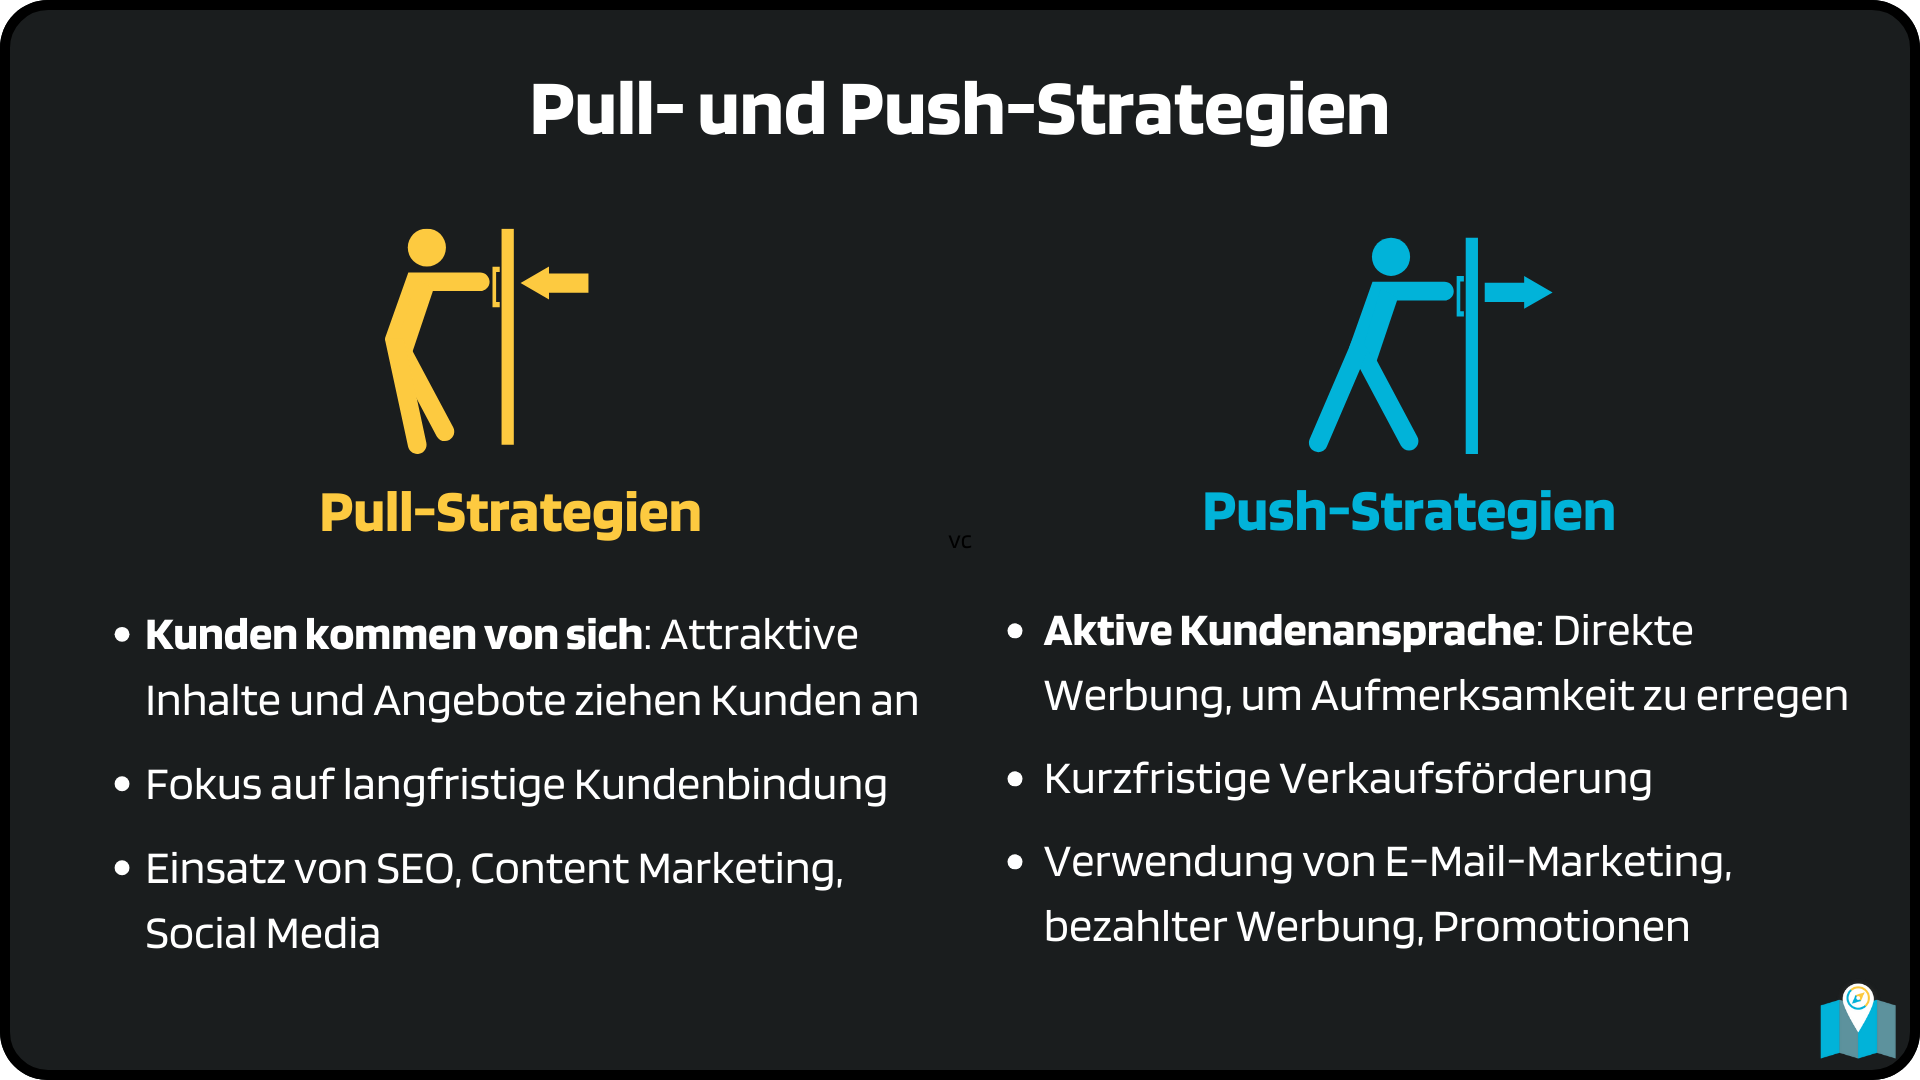 Erklärung Pull- und Push-Strategien